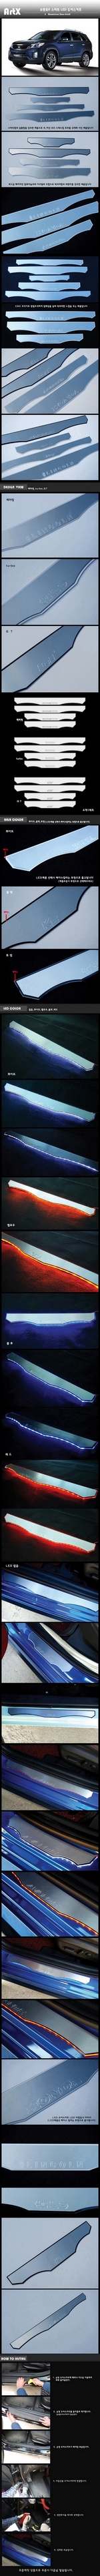 Накладки на пороги алюминиевые с подсветкой (вариант 1) ArtX KIA Sorento 2009-2012